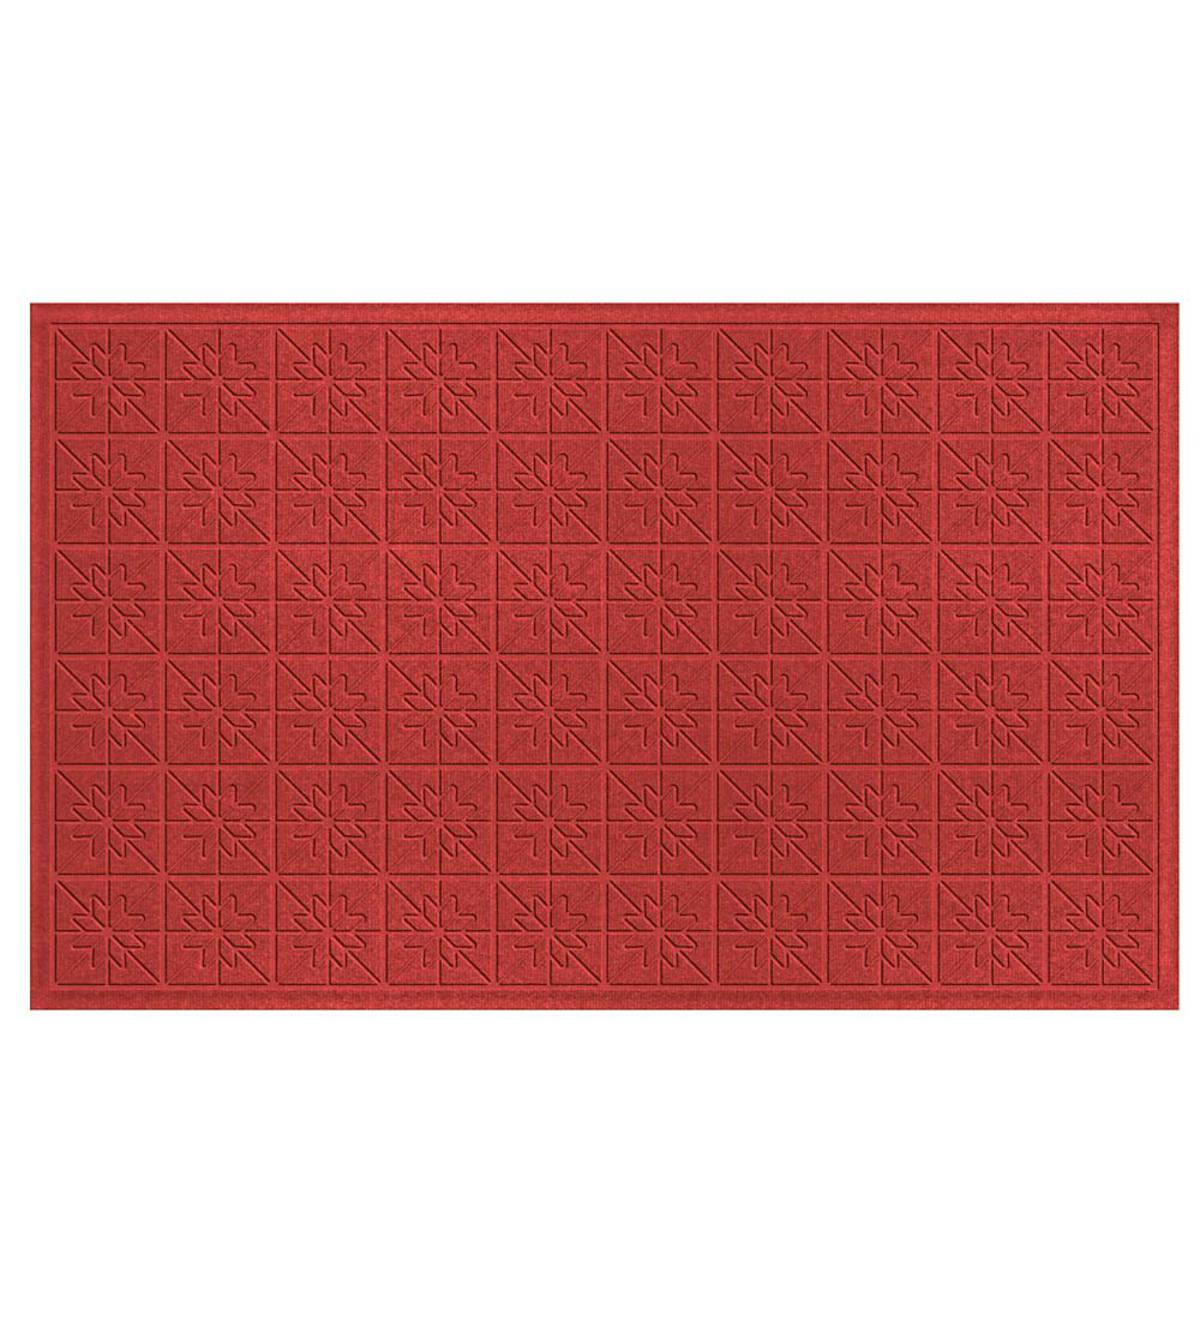 Waterhog™ Doormat with Star Quilt Pattern - Red